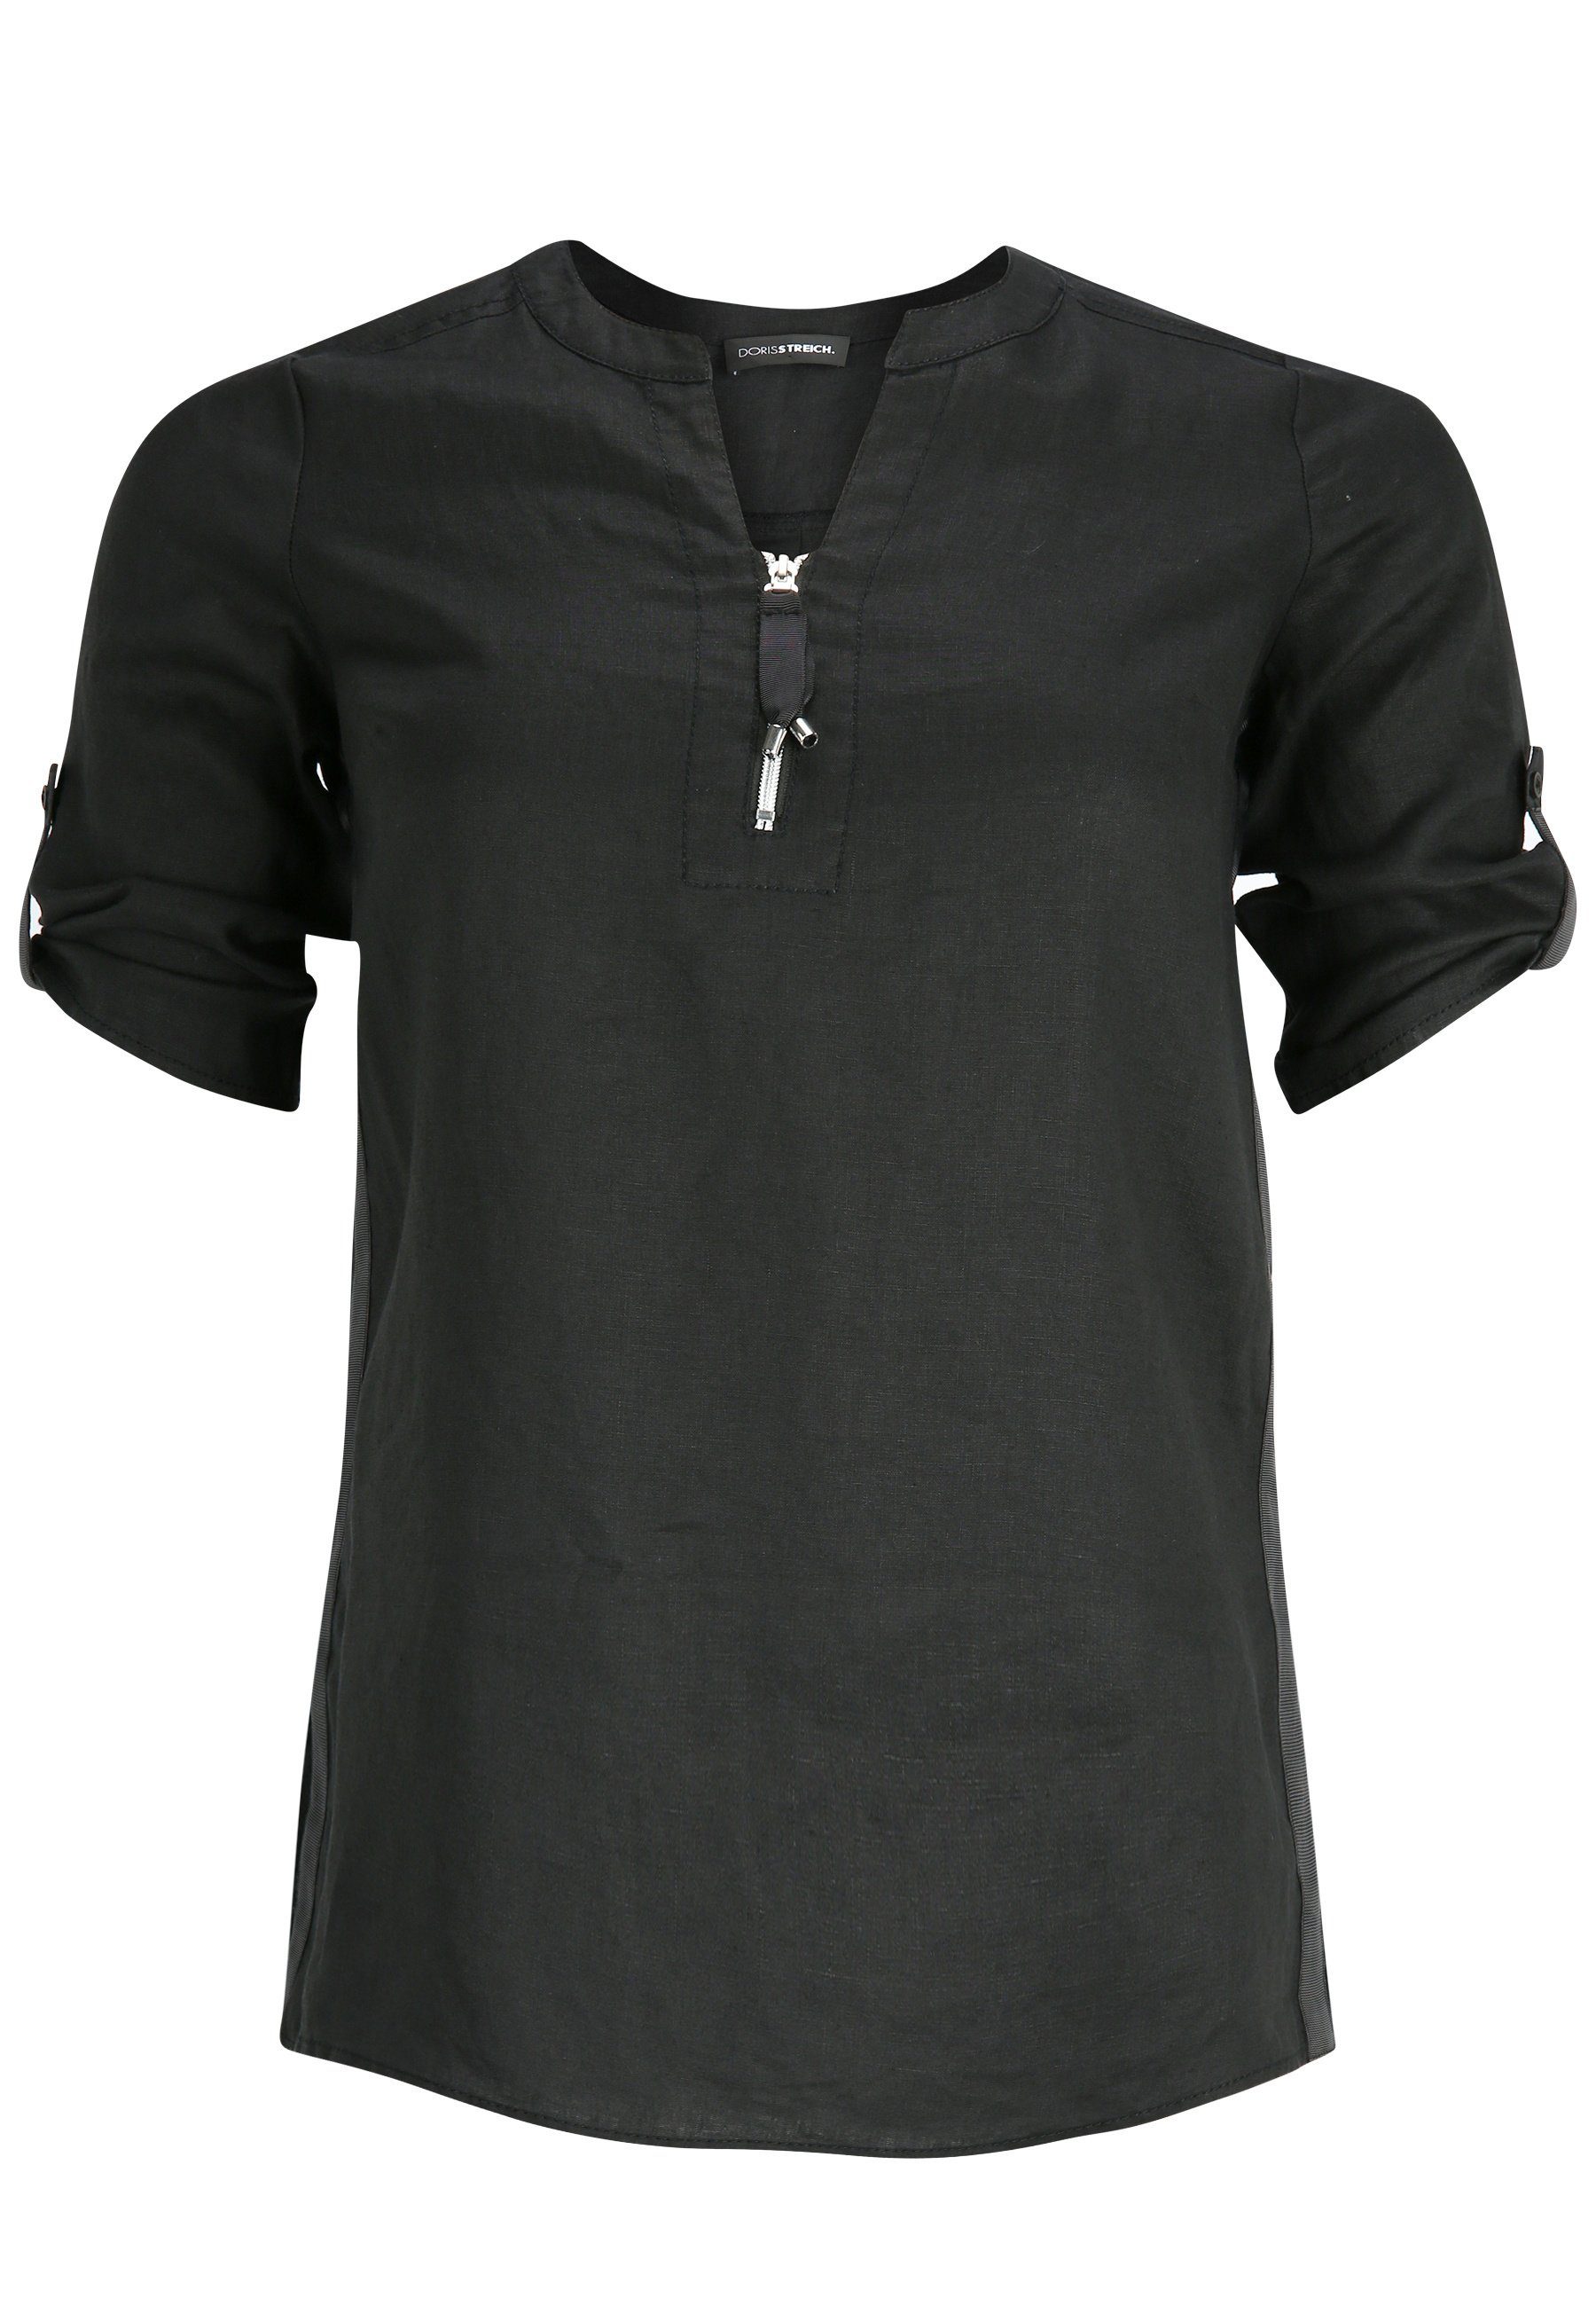 Doris Streich Hemdbluse Leinen-Bluse mit Reißverschluss